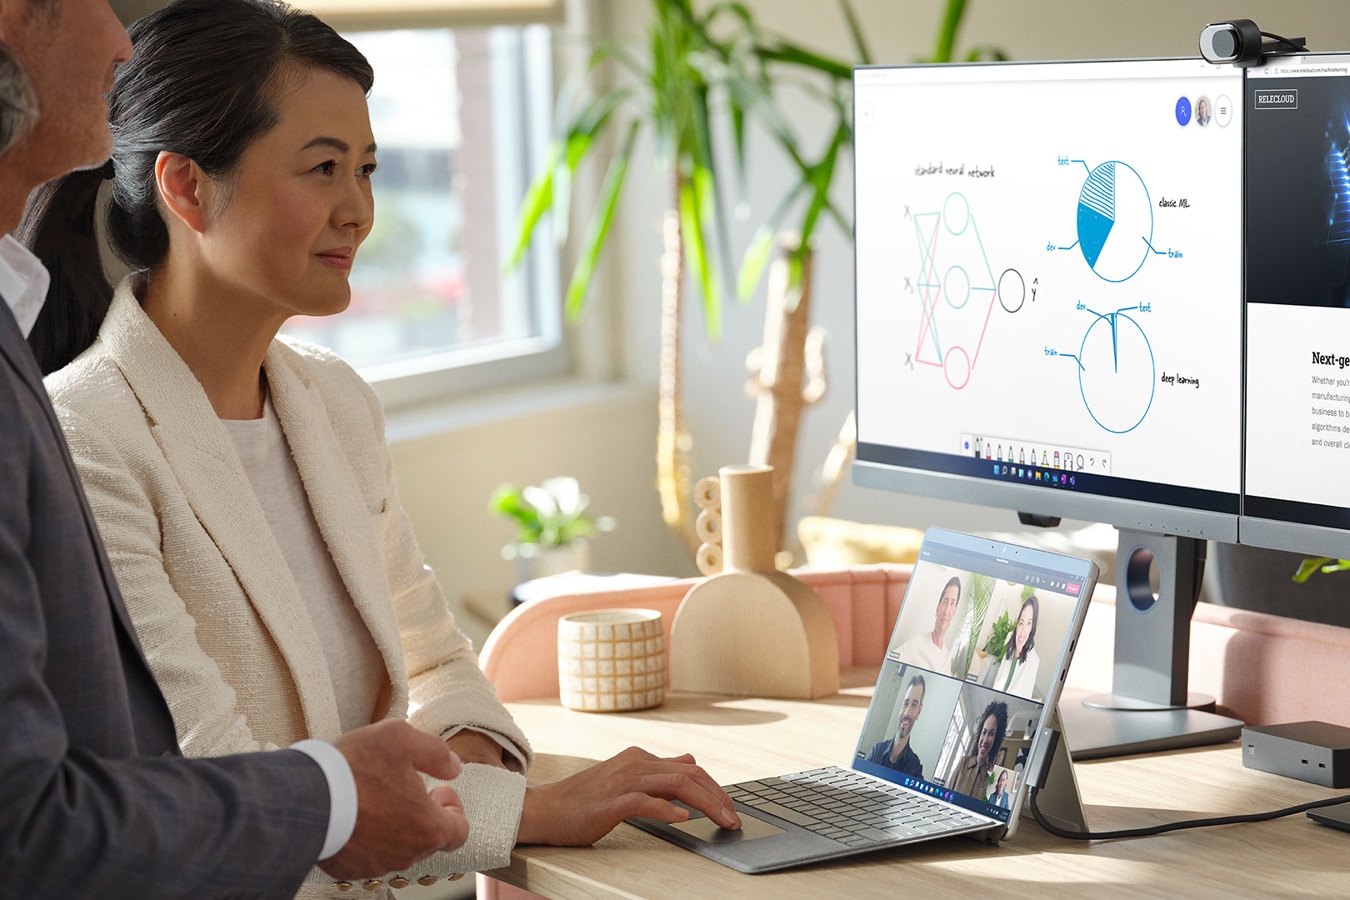 一位男士和一位女士分别使用外接至显示器的 Surface，在办公室召开 Microsoft Teams 会议的画面